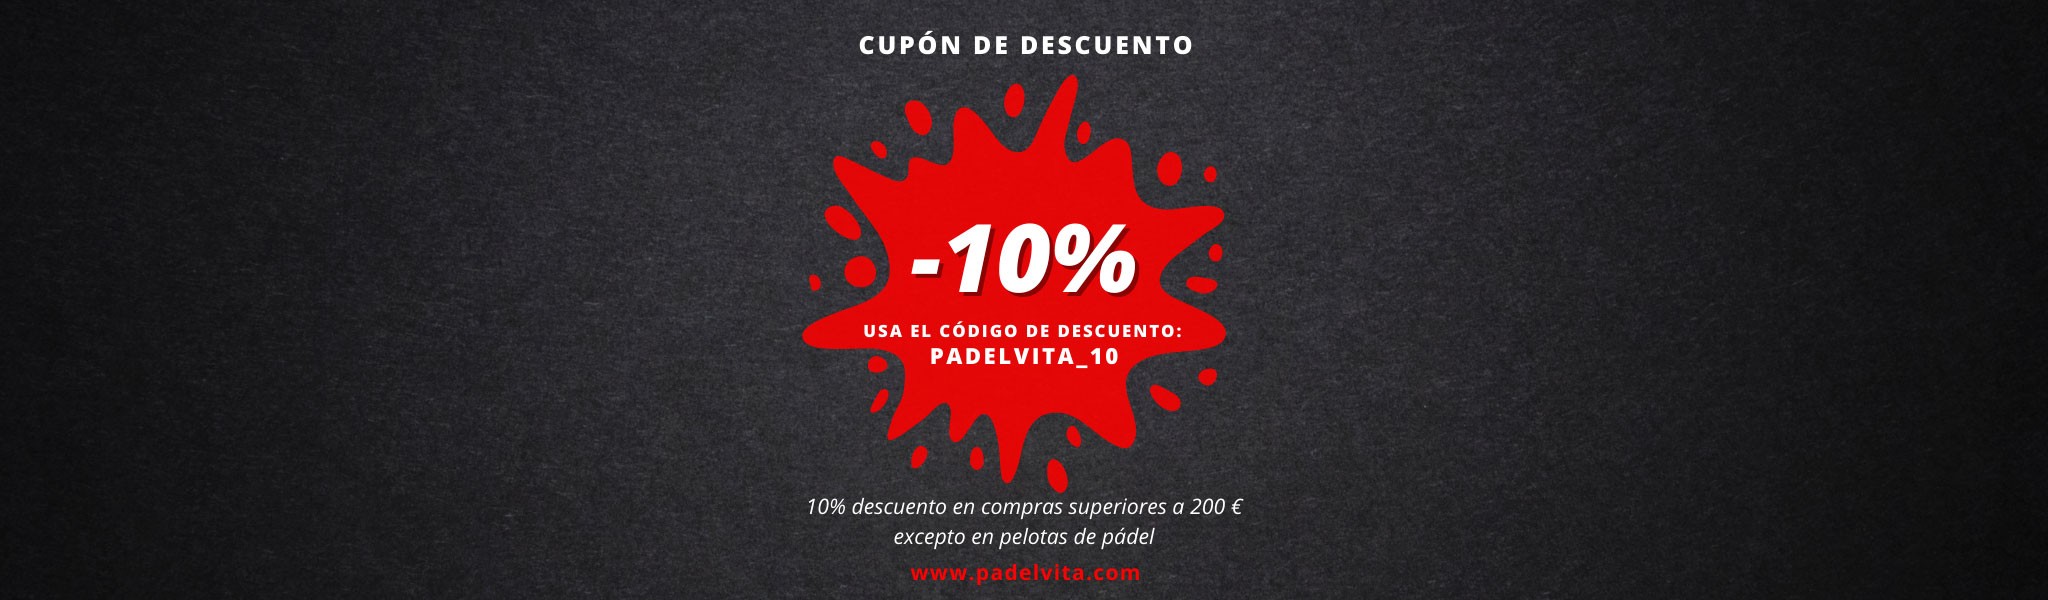 10% de descuento - Padelvita